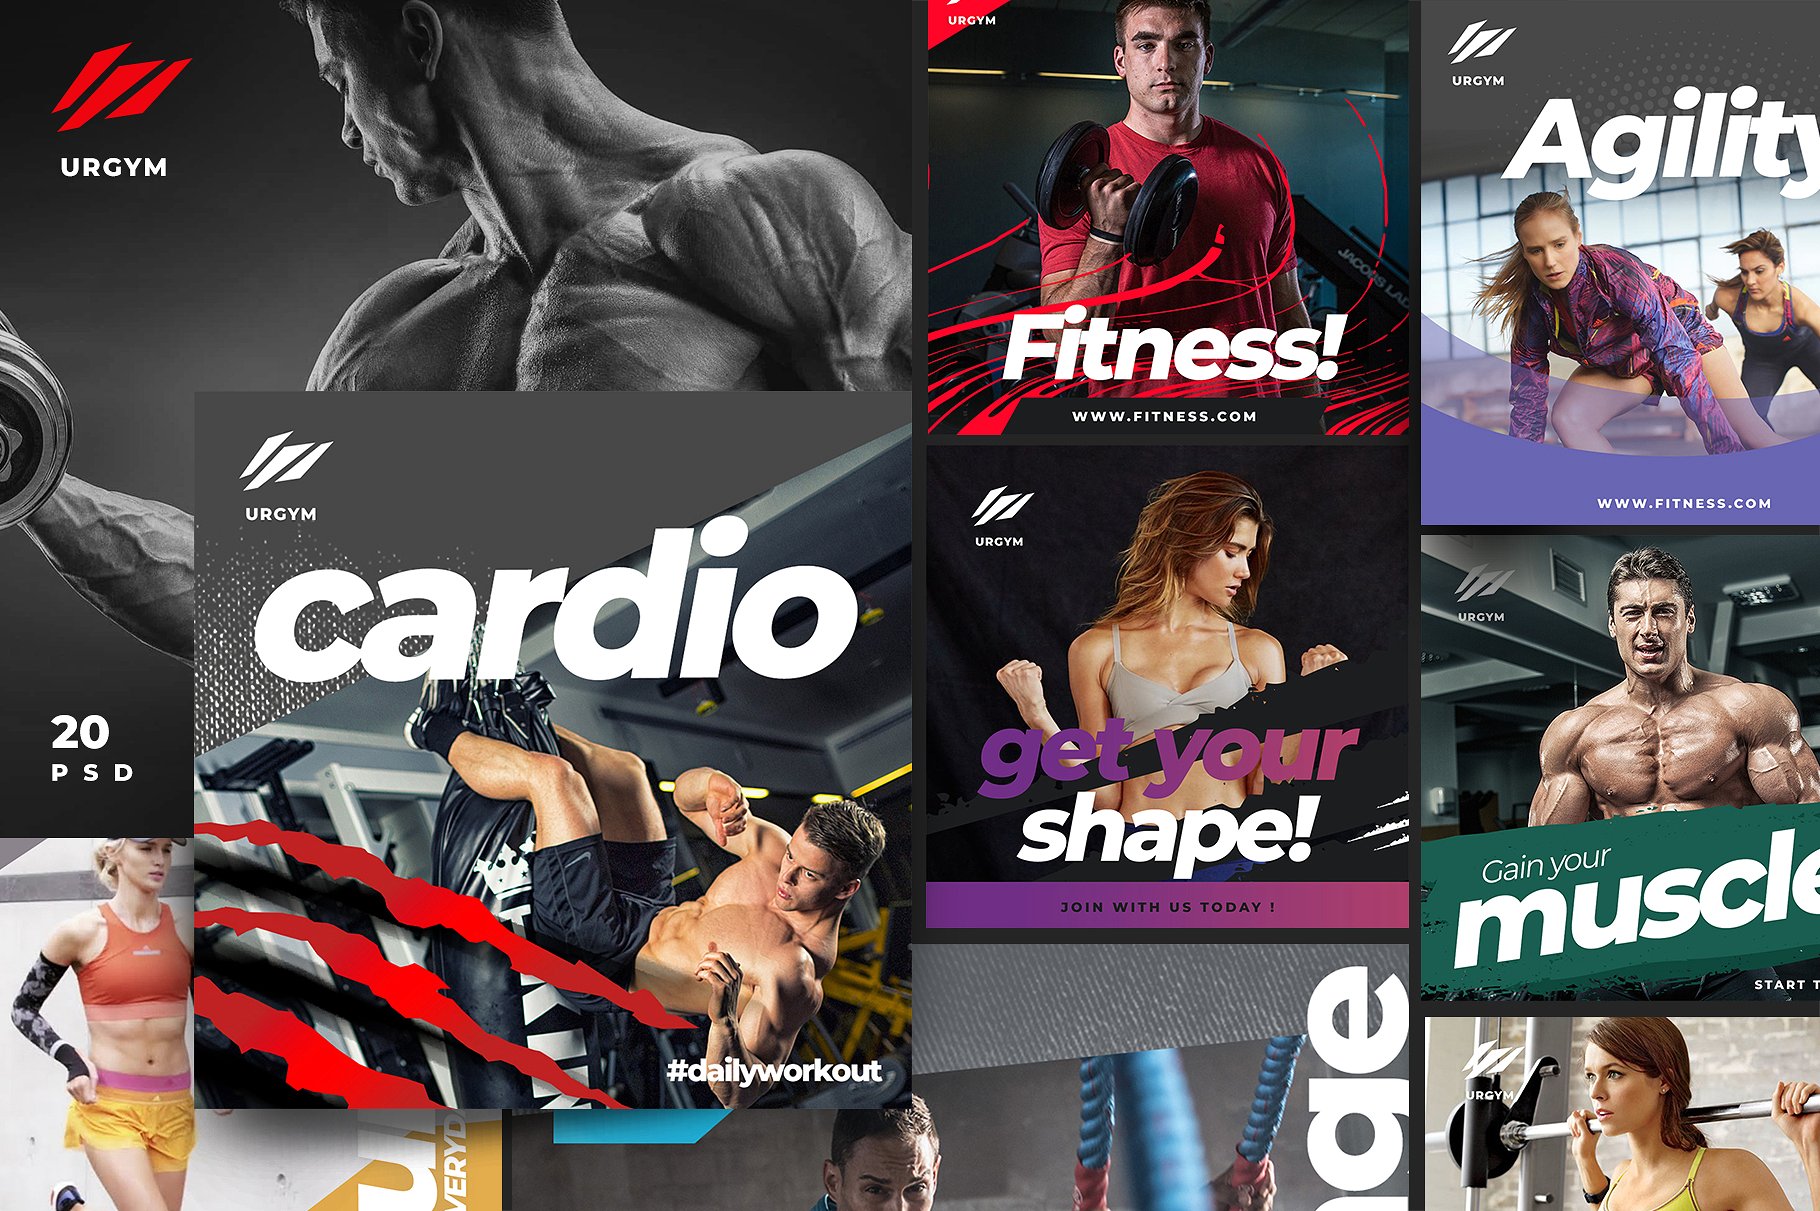 时尚健身&健身器材的instagram社交媒体模板素材库精选 Fitness & Gym instagram pack 2.0 [psd]插图